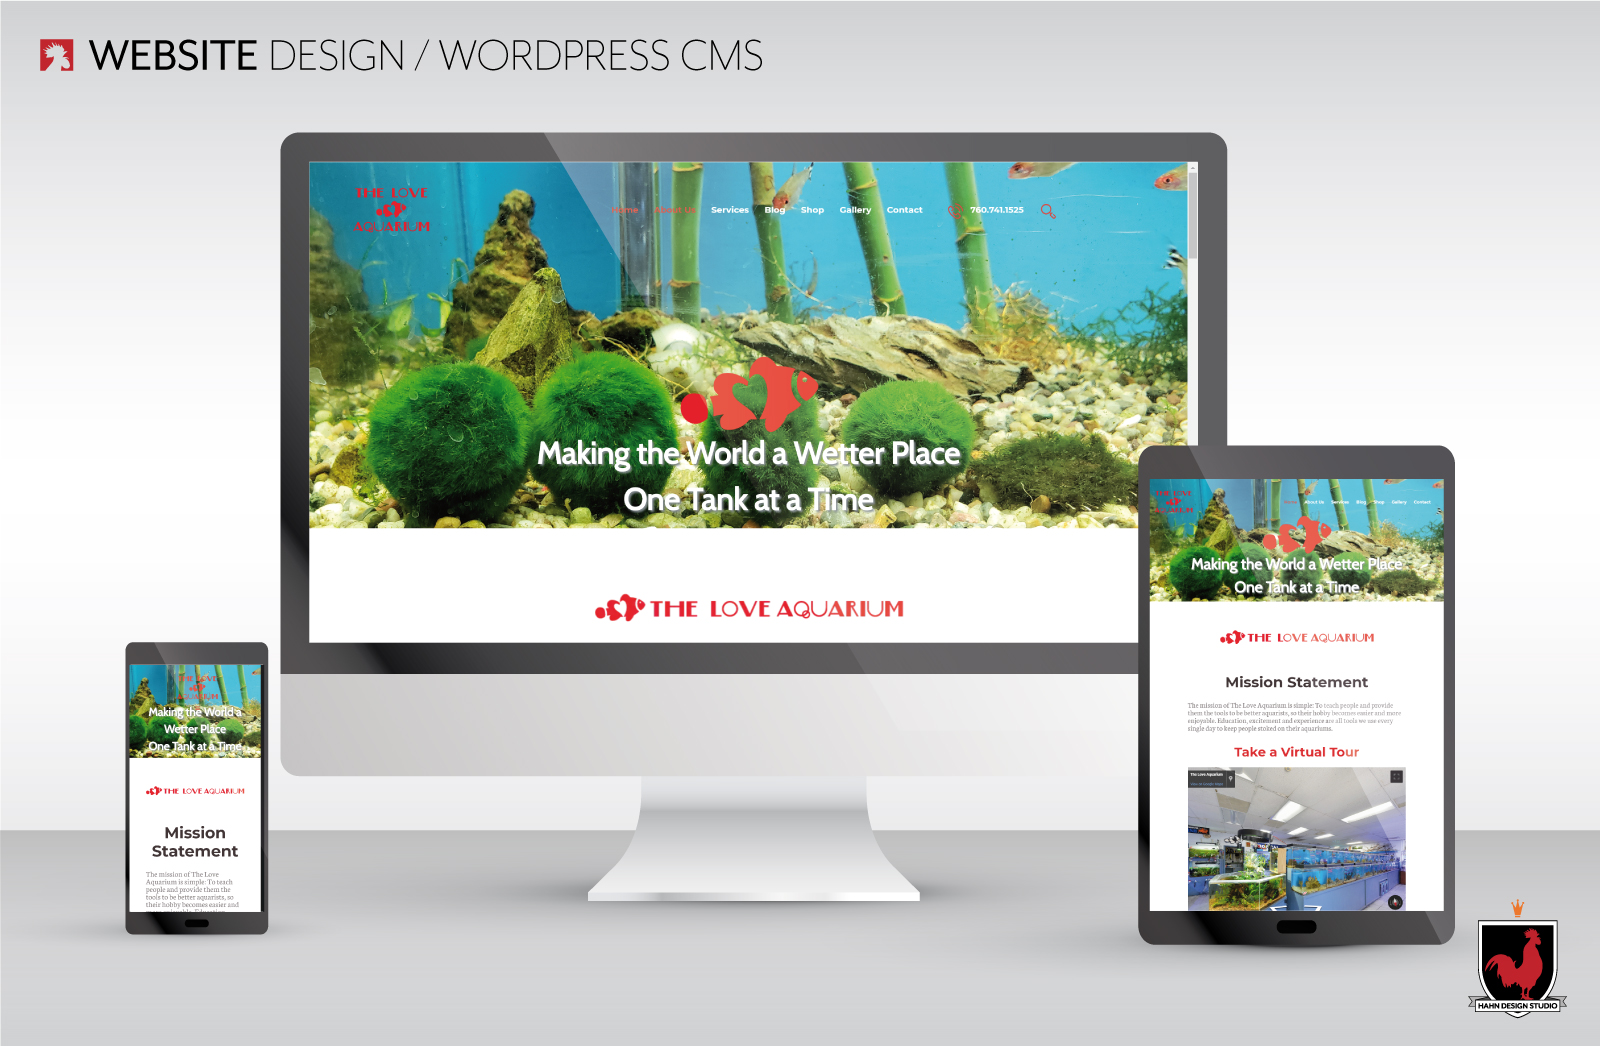 Website Design for The Love Aquarium designed by Hahn Design Studio, San Marcos, CA